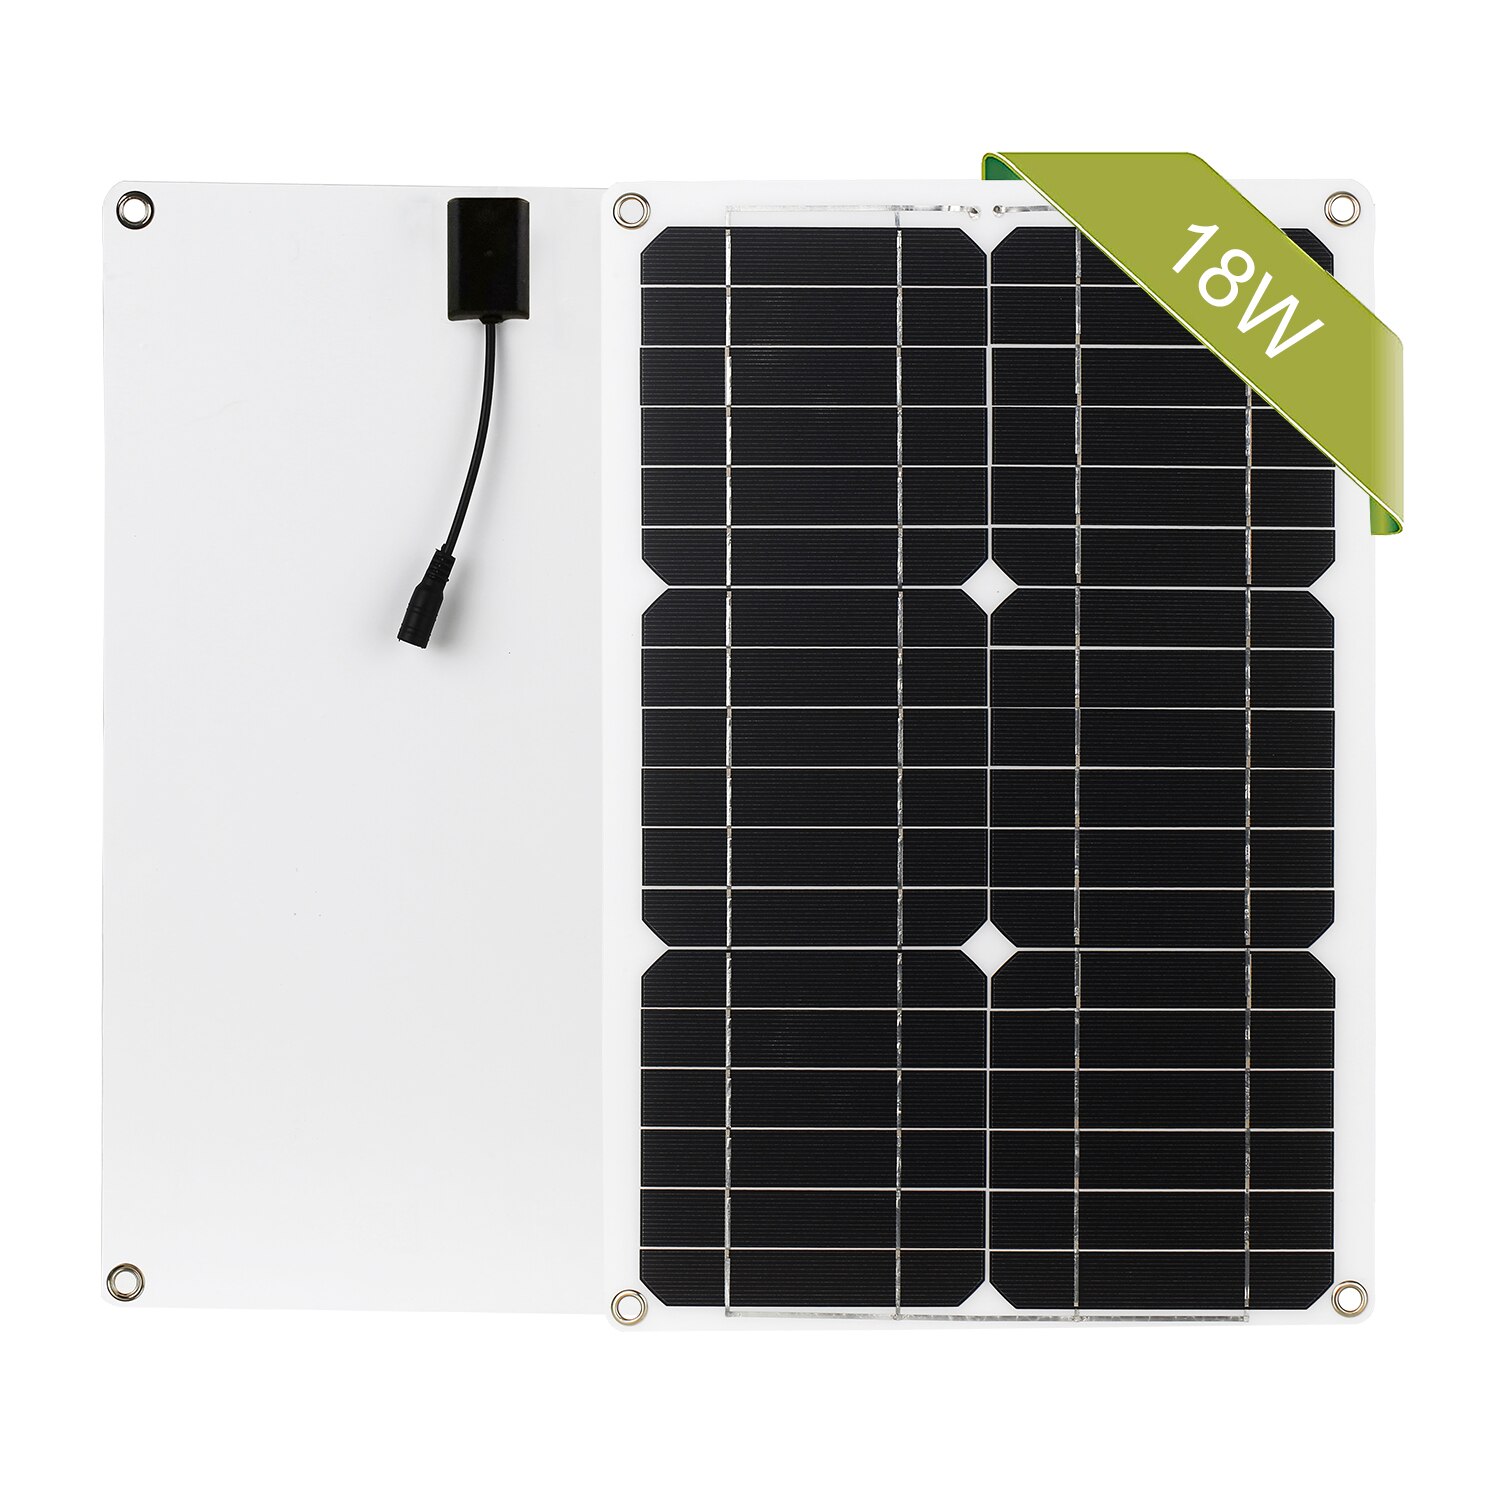 18w 12v solpanelsæt fra gittermonokrystallinsk modul med solopladningsregulator sae-forbindelseskabelsæt: Uden controller